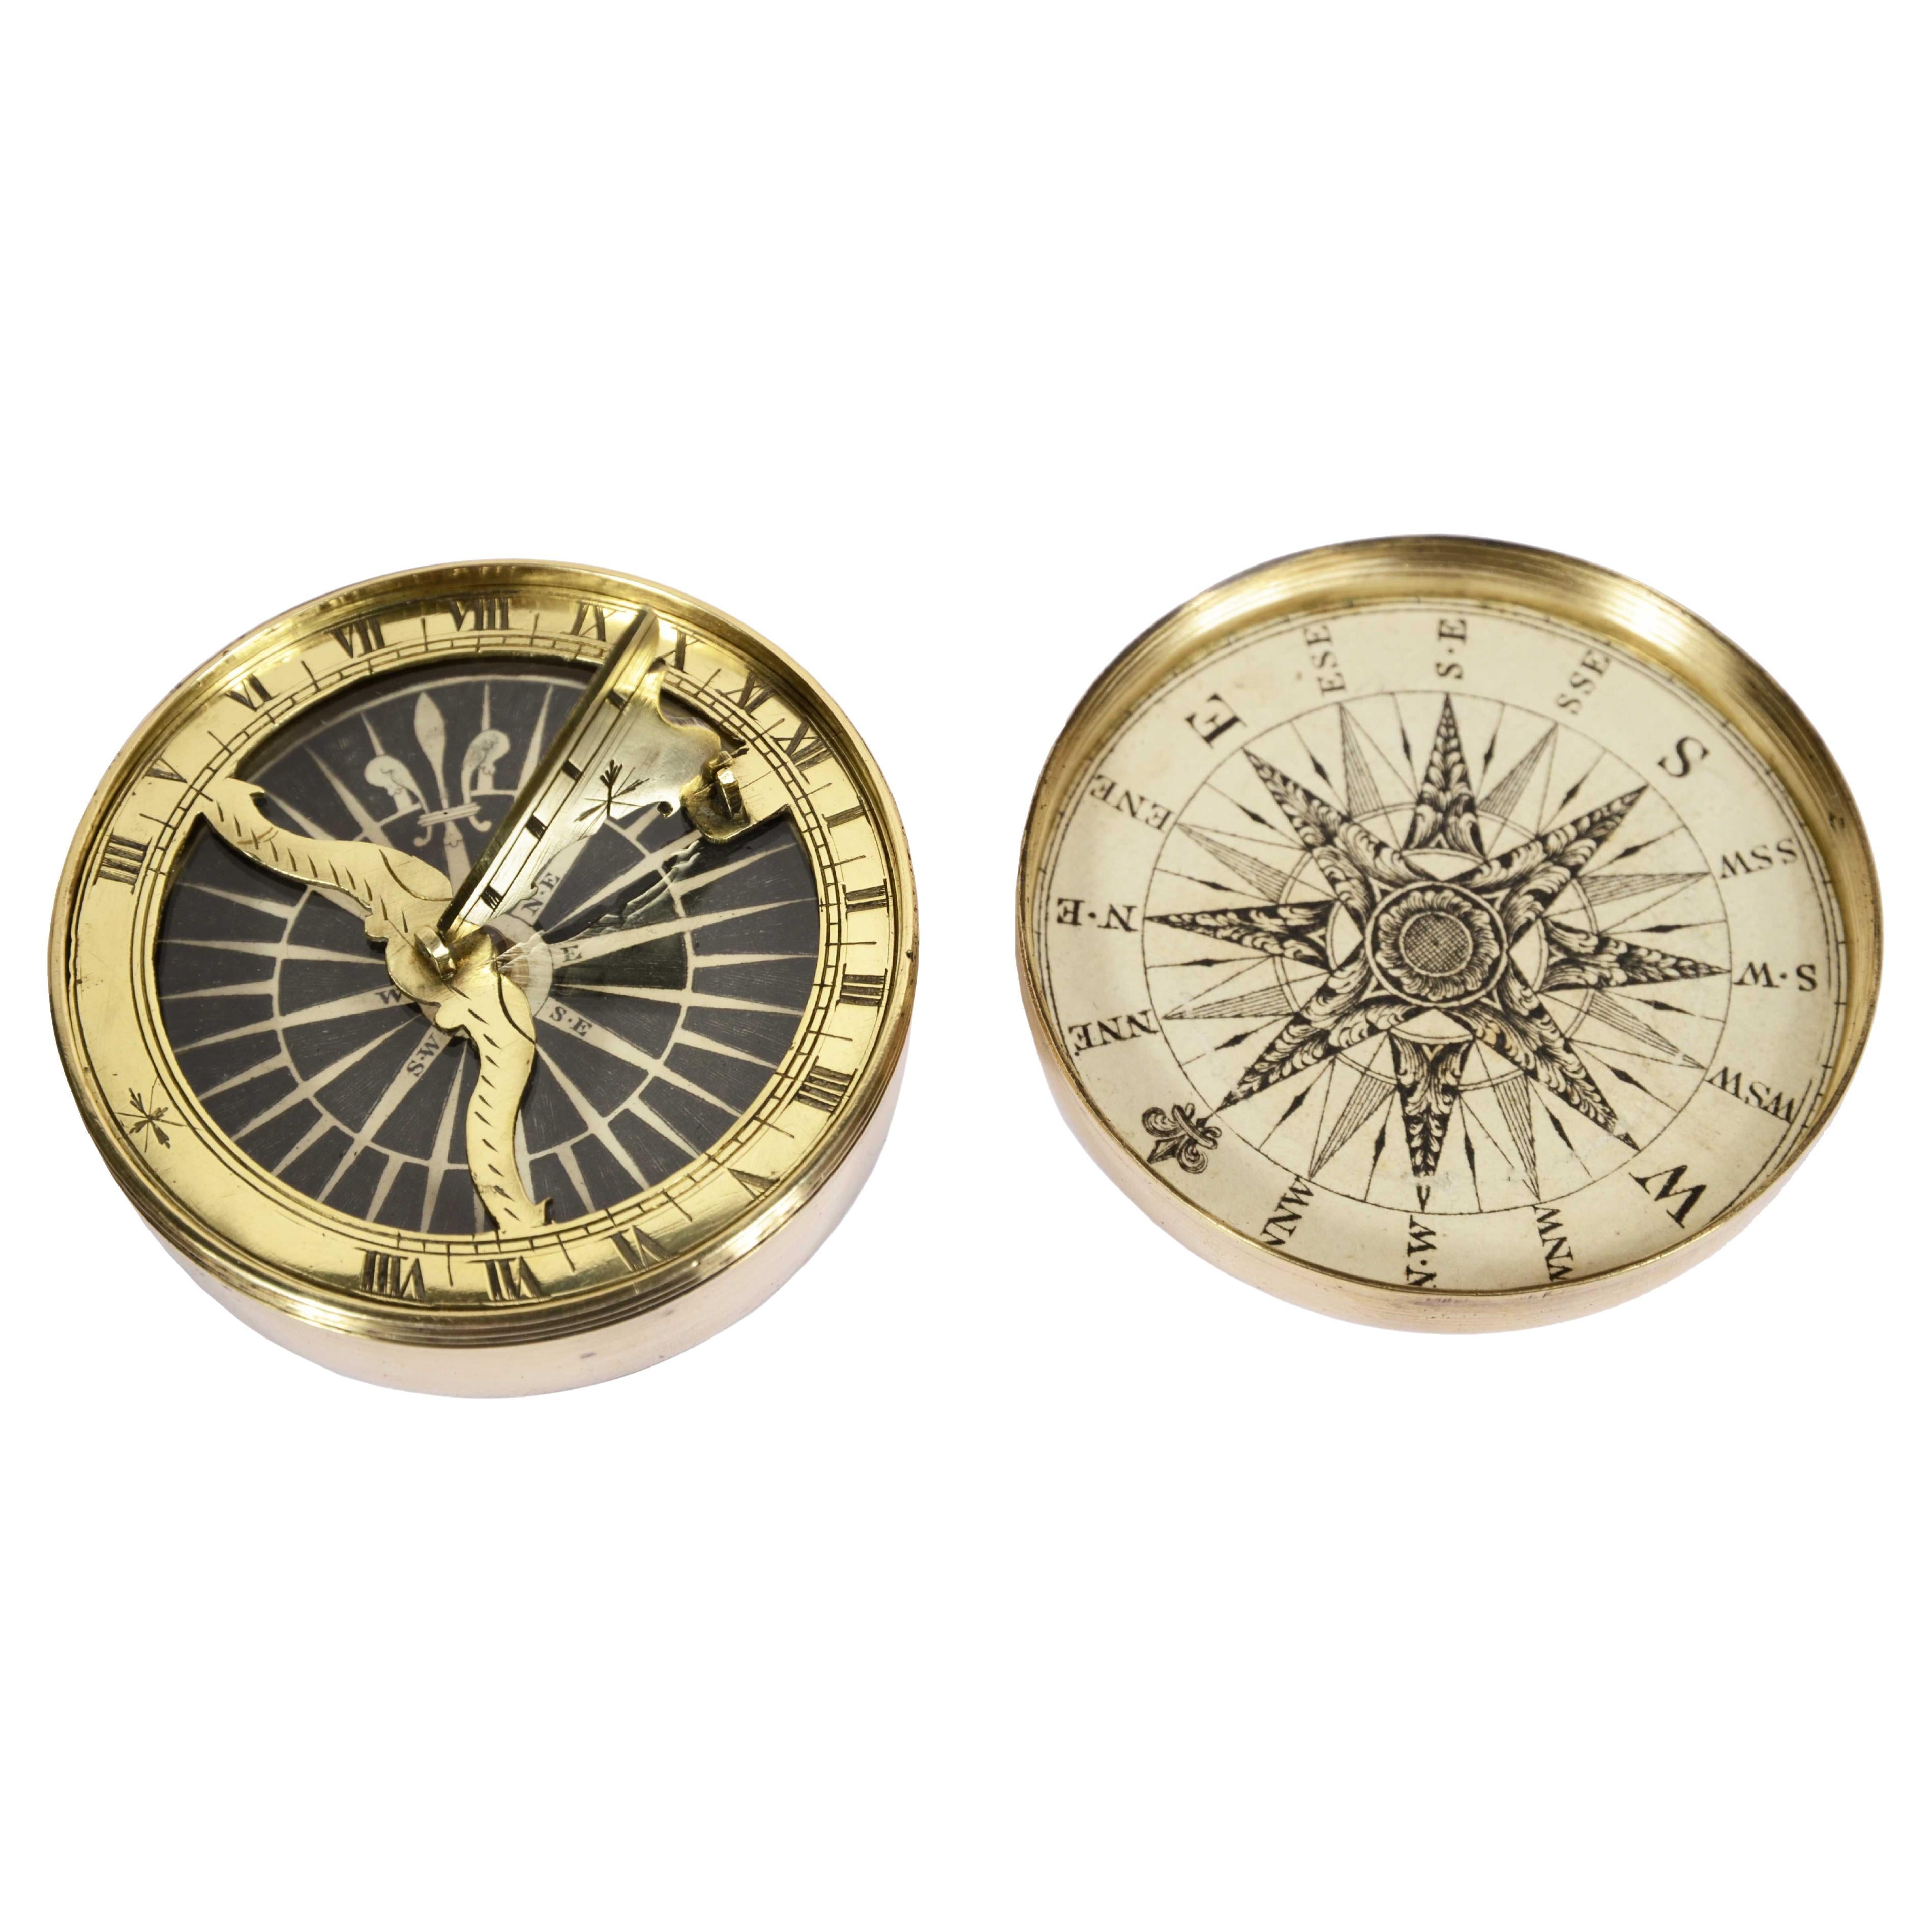 Rara bussola nautica e orologio solare insieme Inghilterra prima metà del XIX sc For Sale